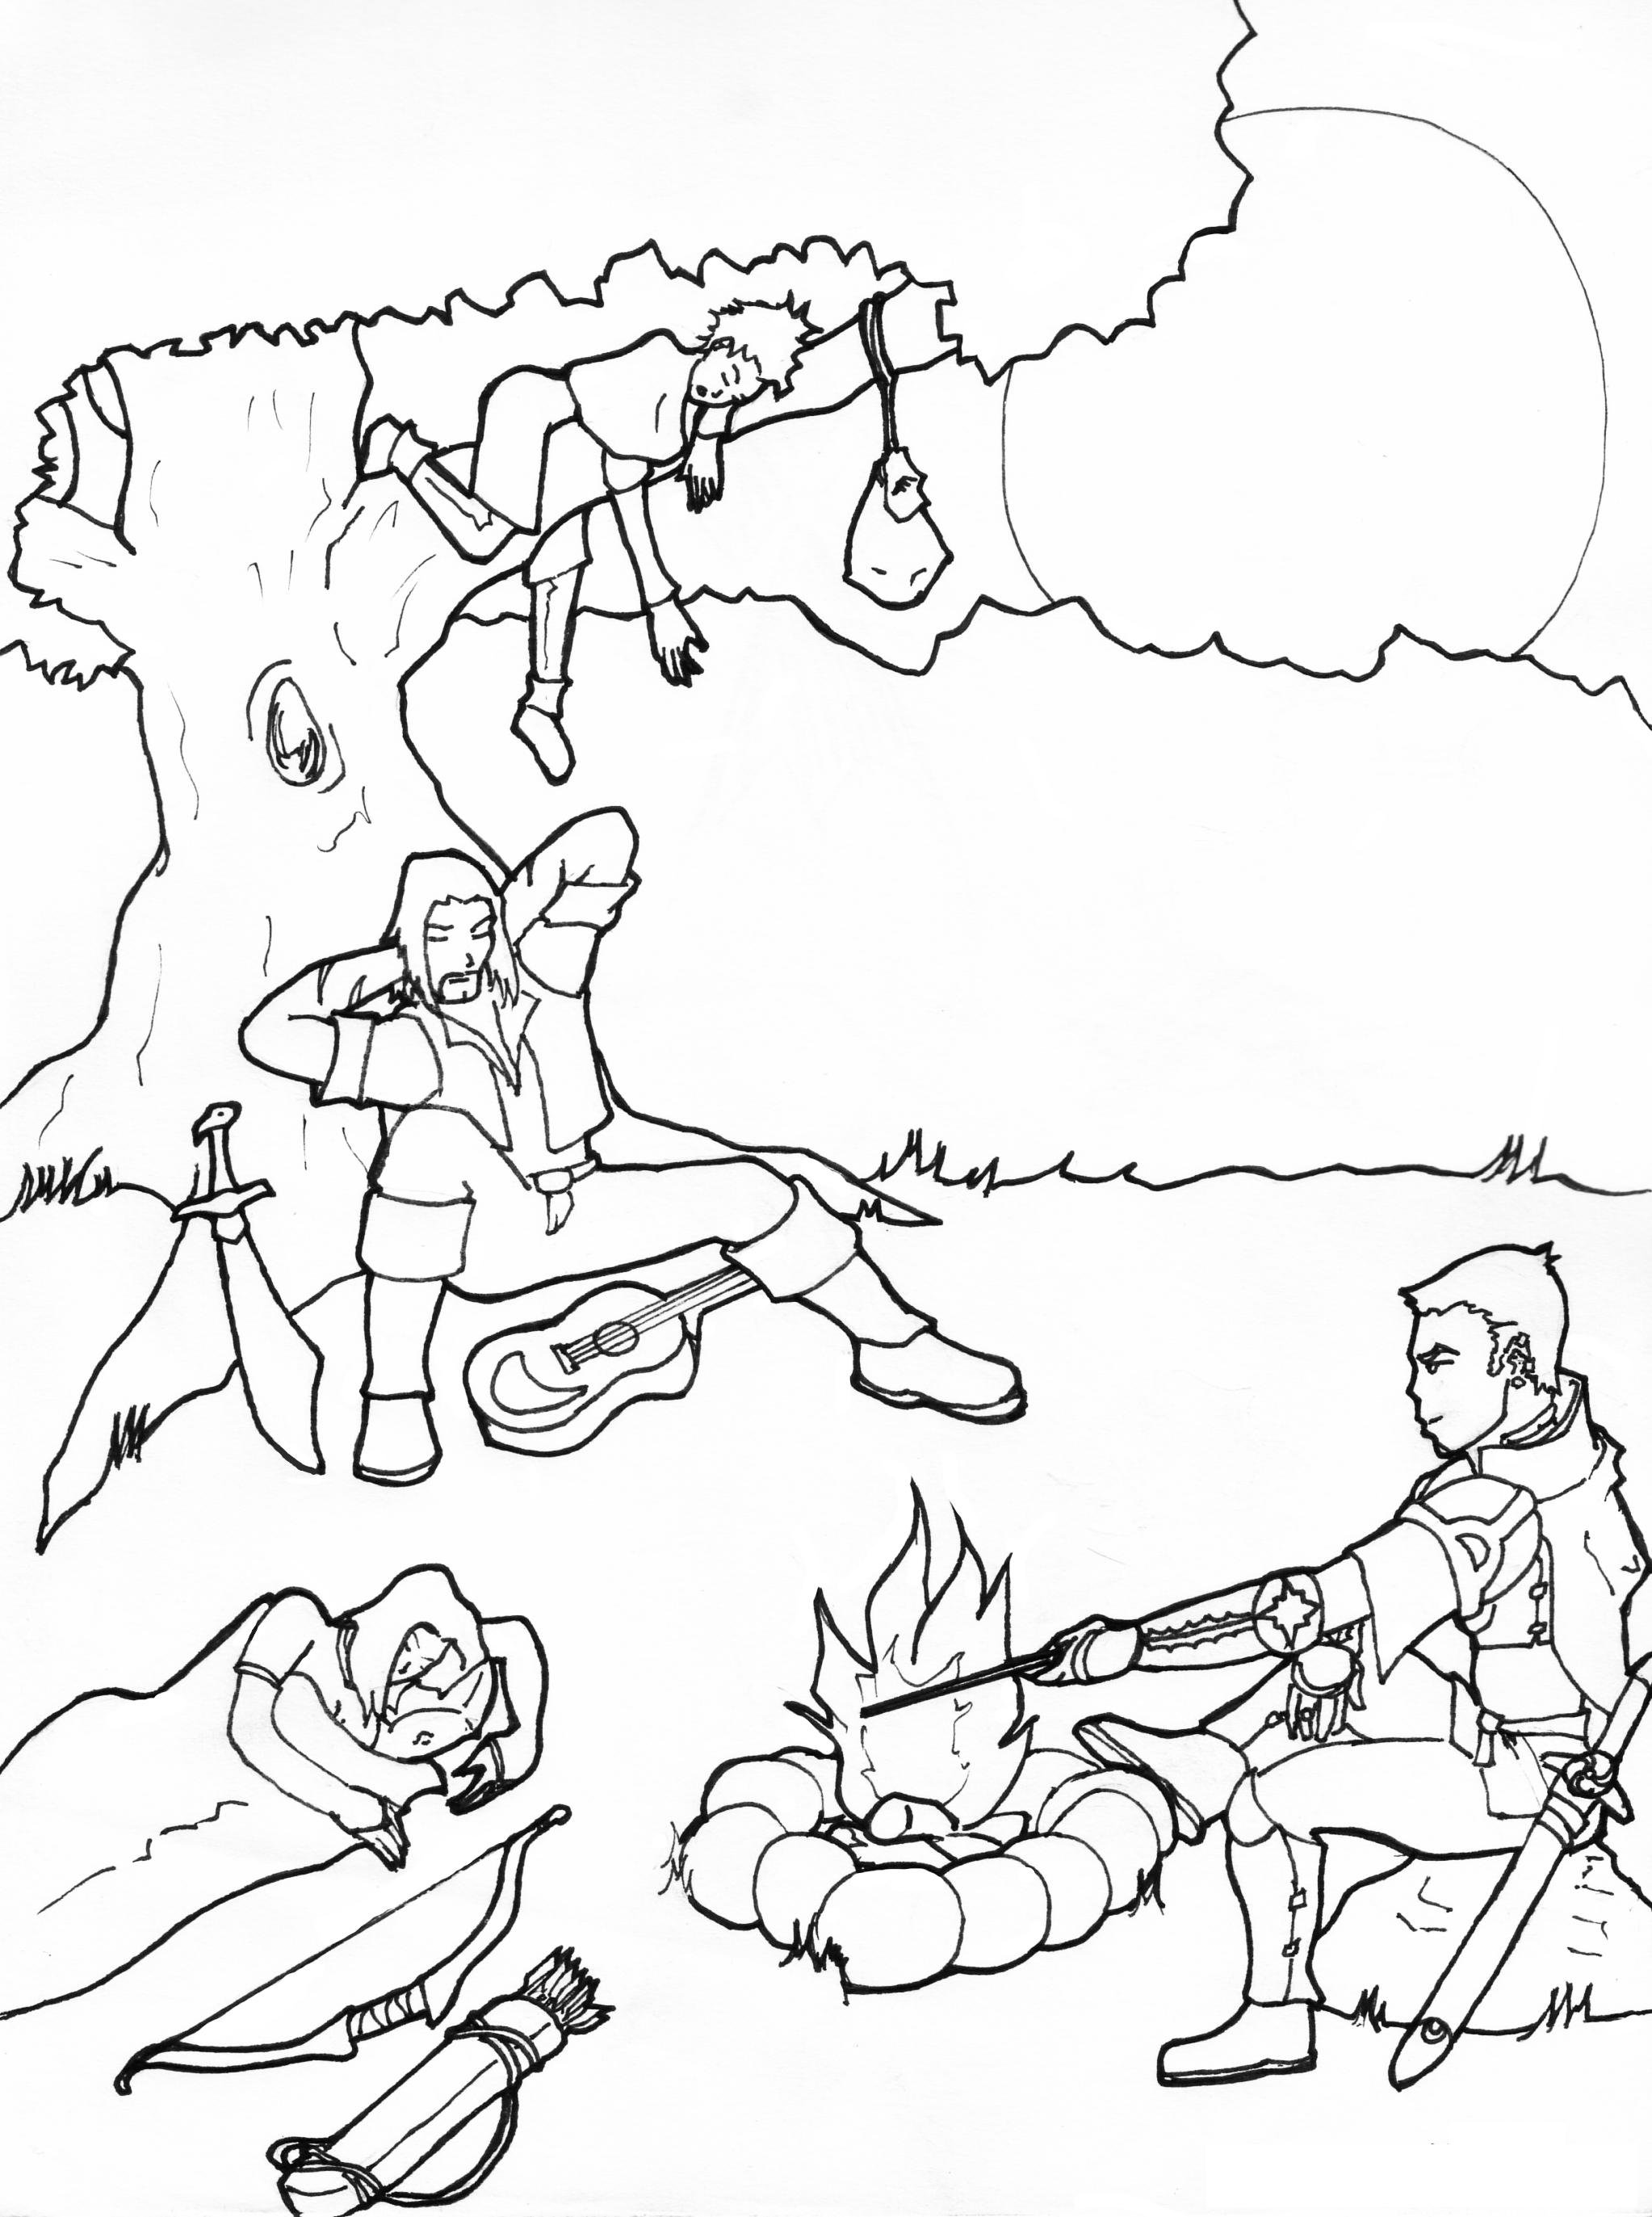 Scène de fantasy au trait : un chevalier entretient le feu, pendant qu'une femme dort dans un sac de couchage à sa gauche. À l'arrière-plan, un barde dort appuyé contre un arbre et une voleuse dort sur une branche, son sac suspendu près d'elle.